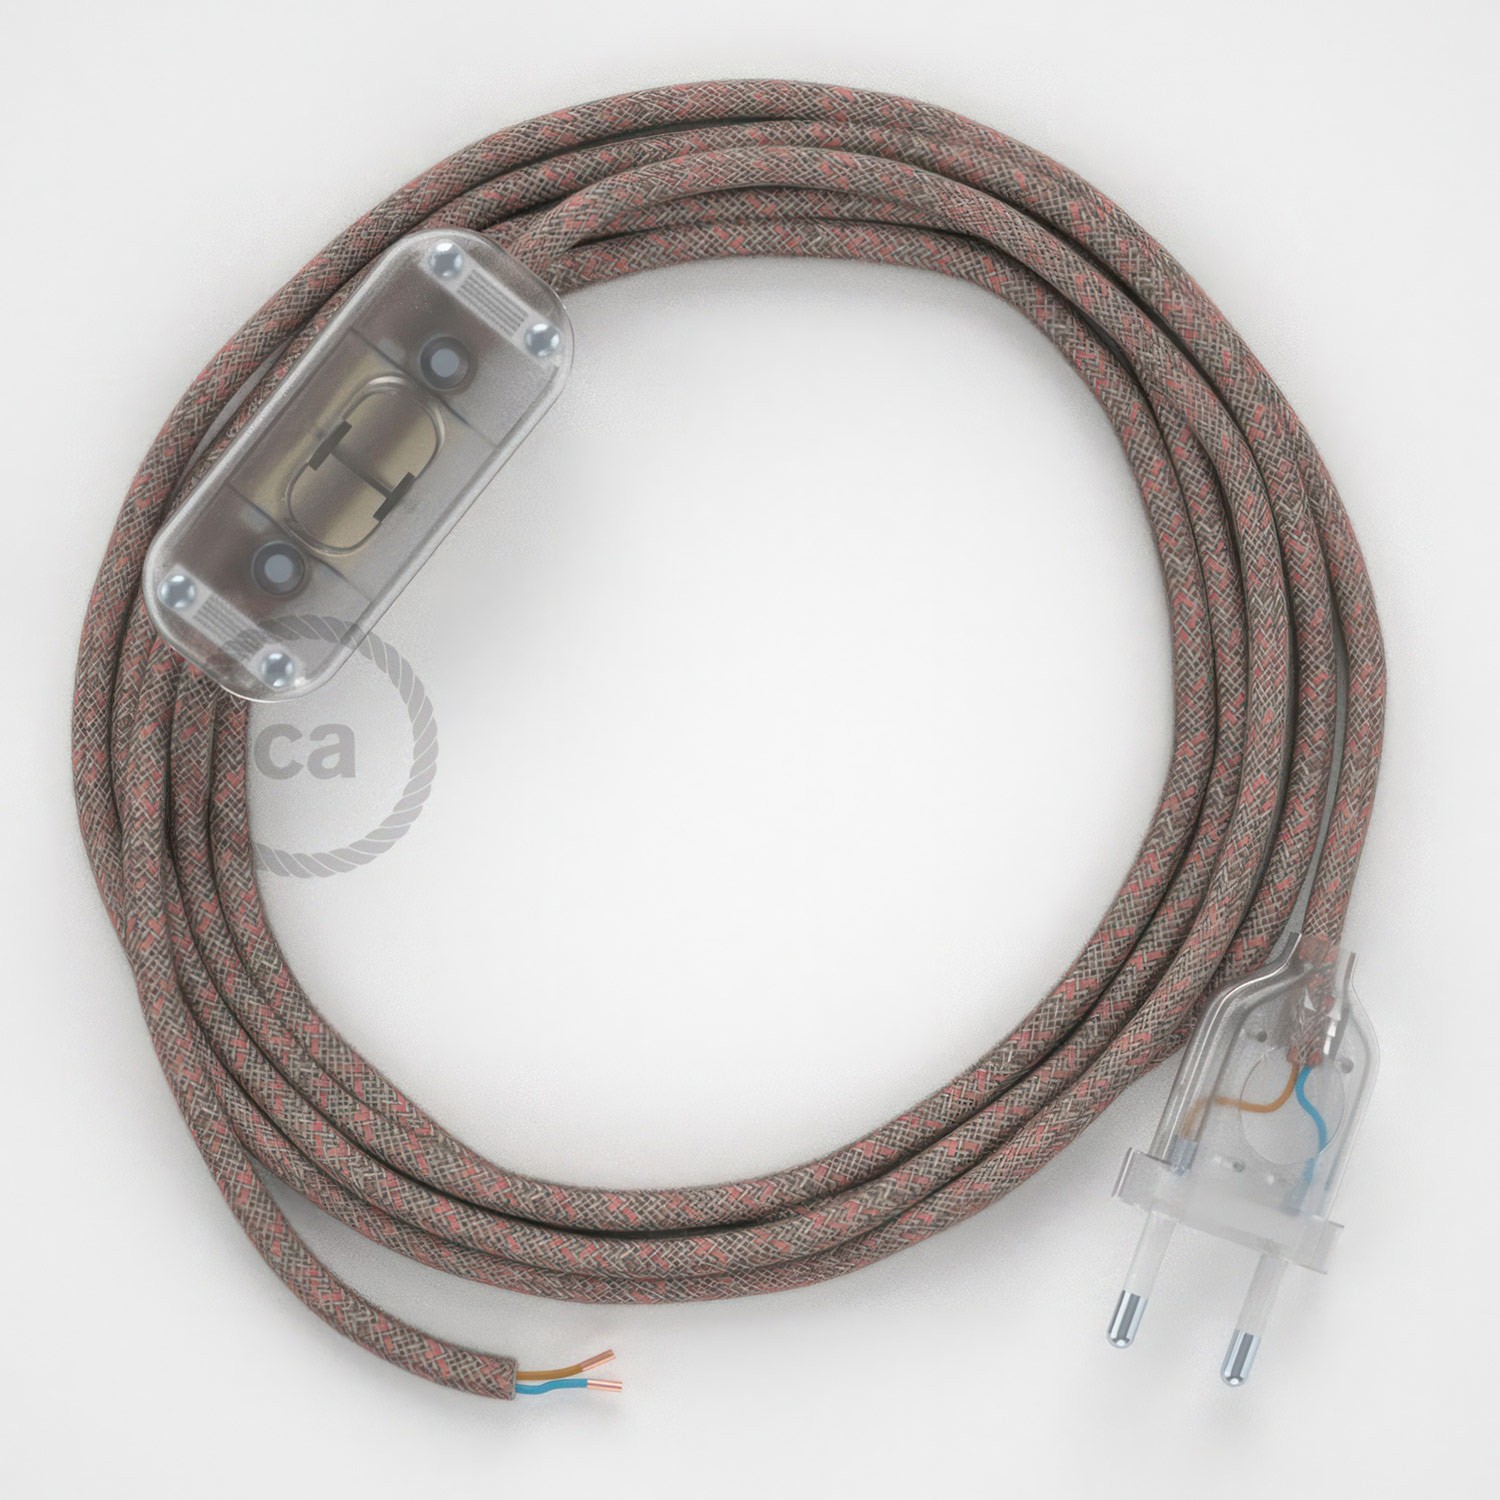 Cableado para lámpara, cable RD61 Algodón y Lino Rombo Rosa Viejo 1,8m. Elige tu el color de la clavija y del interruptor!